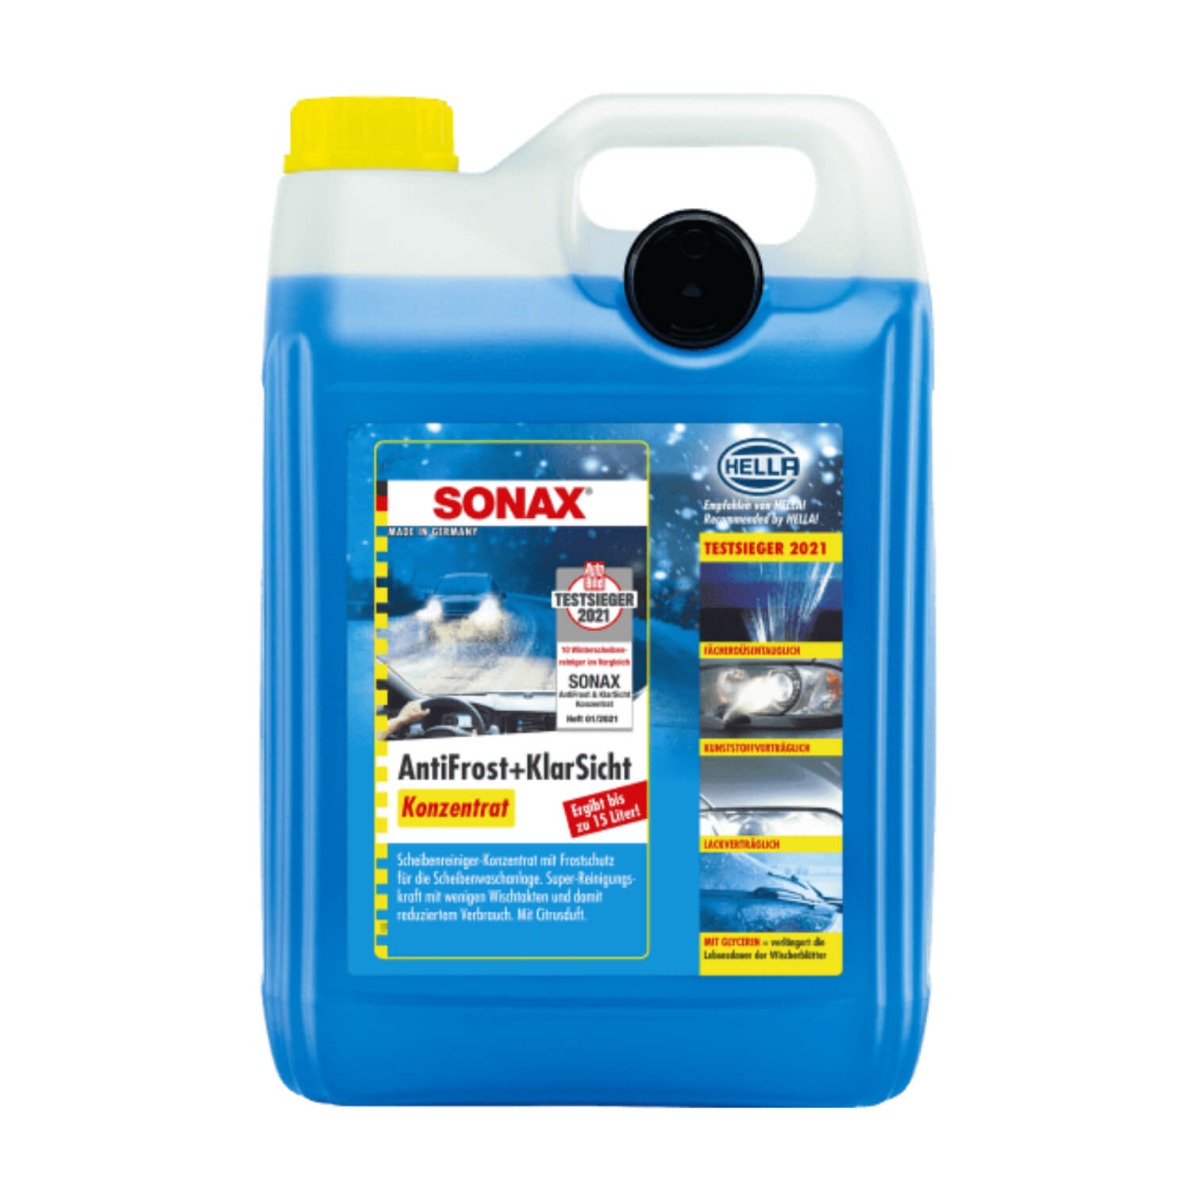 SONAX AntiFrost+KlarSicht Konzentrat (5 Liter)  Scheibenwaschanlagen-Frostschutz sorgt für klare Sicht, Art-Nr. 03325050 :  : Auto & Motorrad